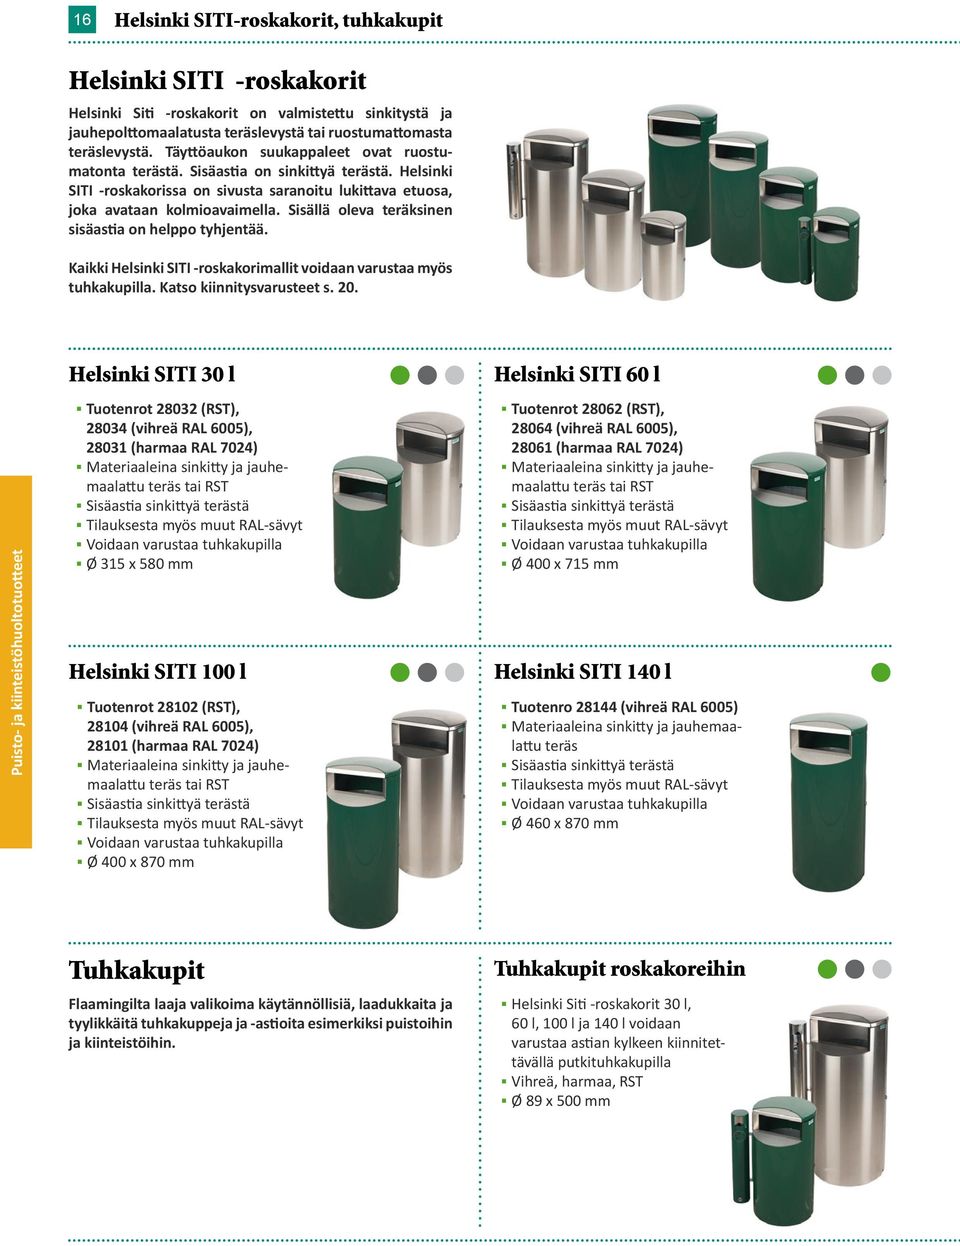 Sisällä oleva teräksinen sisäastia on helppo tyhjentää. Kaikki Helsinki SITI -roskakorimallit voidaan varustaa myös tuhkakupilla. Katso kiinnitysvarusteet s. 20.